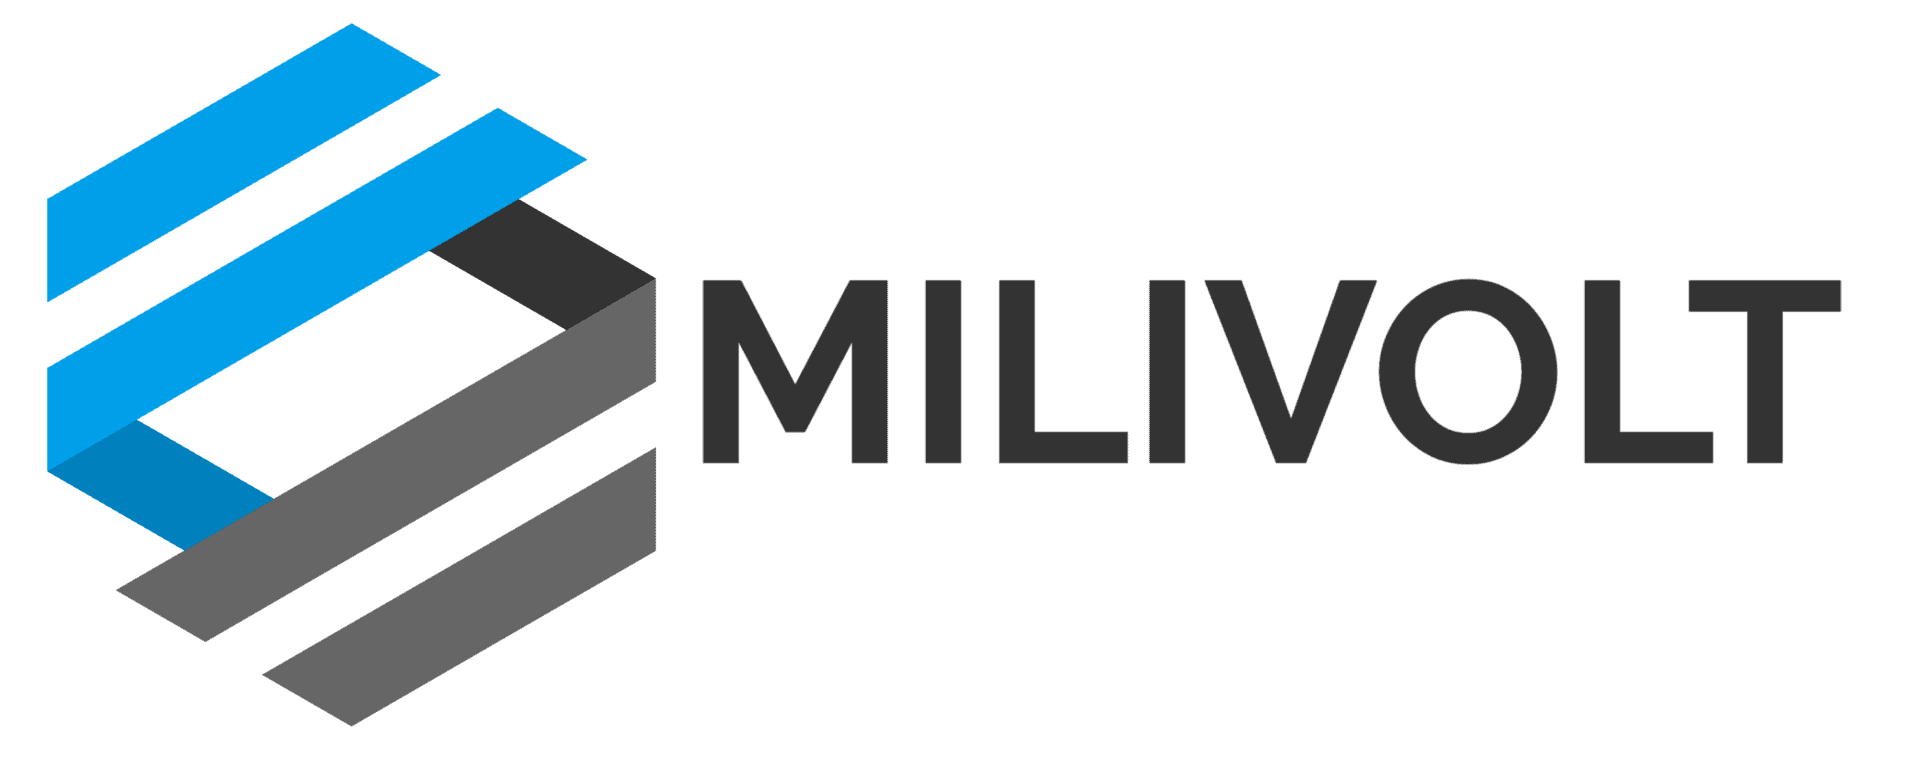 Logo Milivolt TM